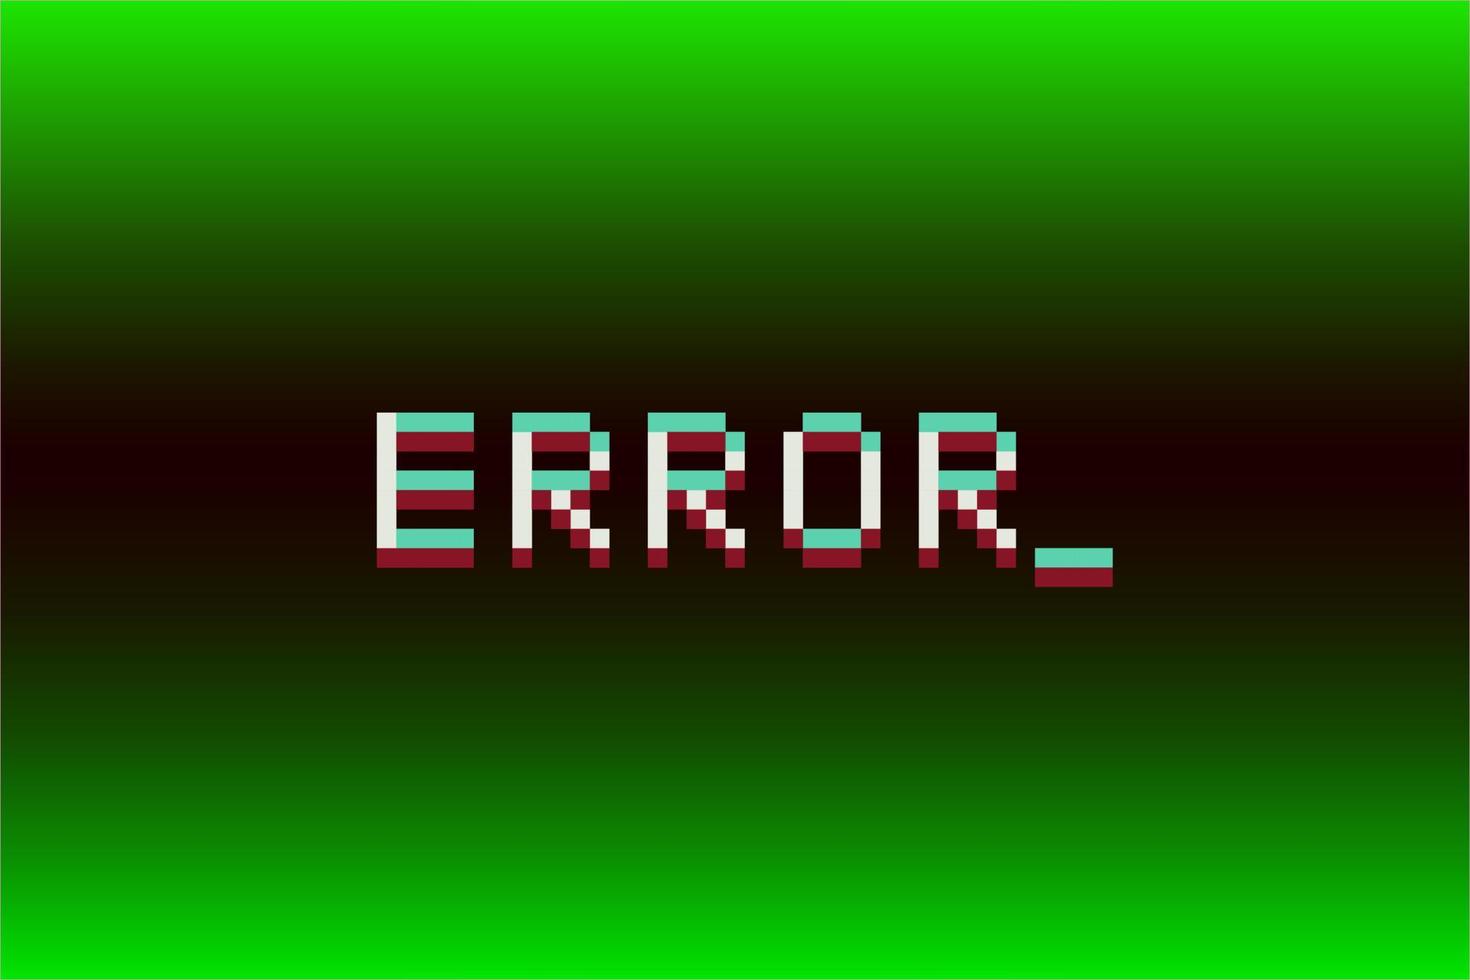 error de mensaje de texto en píxeles de 8 bits. ilustración vectorial de texto vector